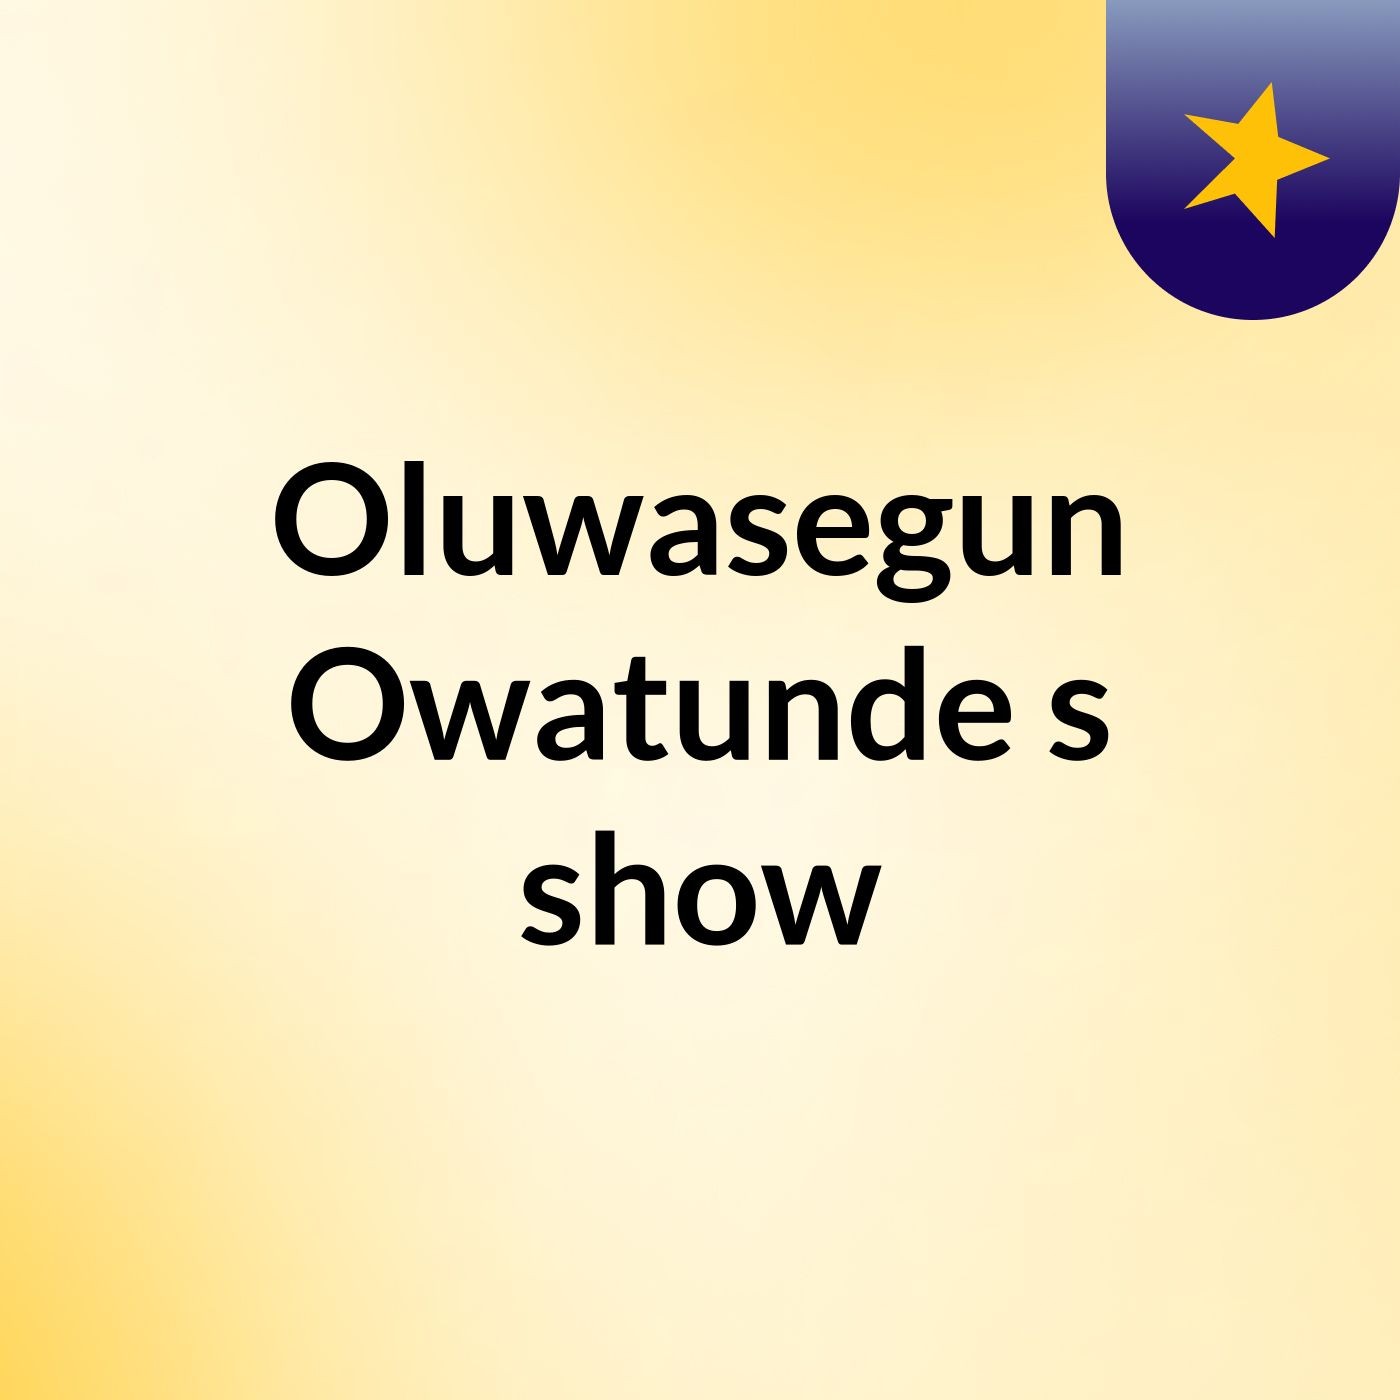 Episode 10 - Oluwasegun Owatunde's show